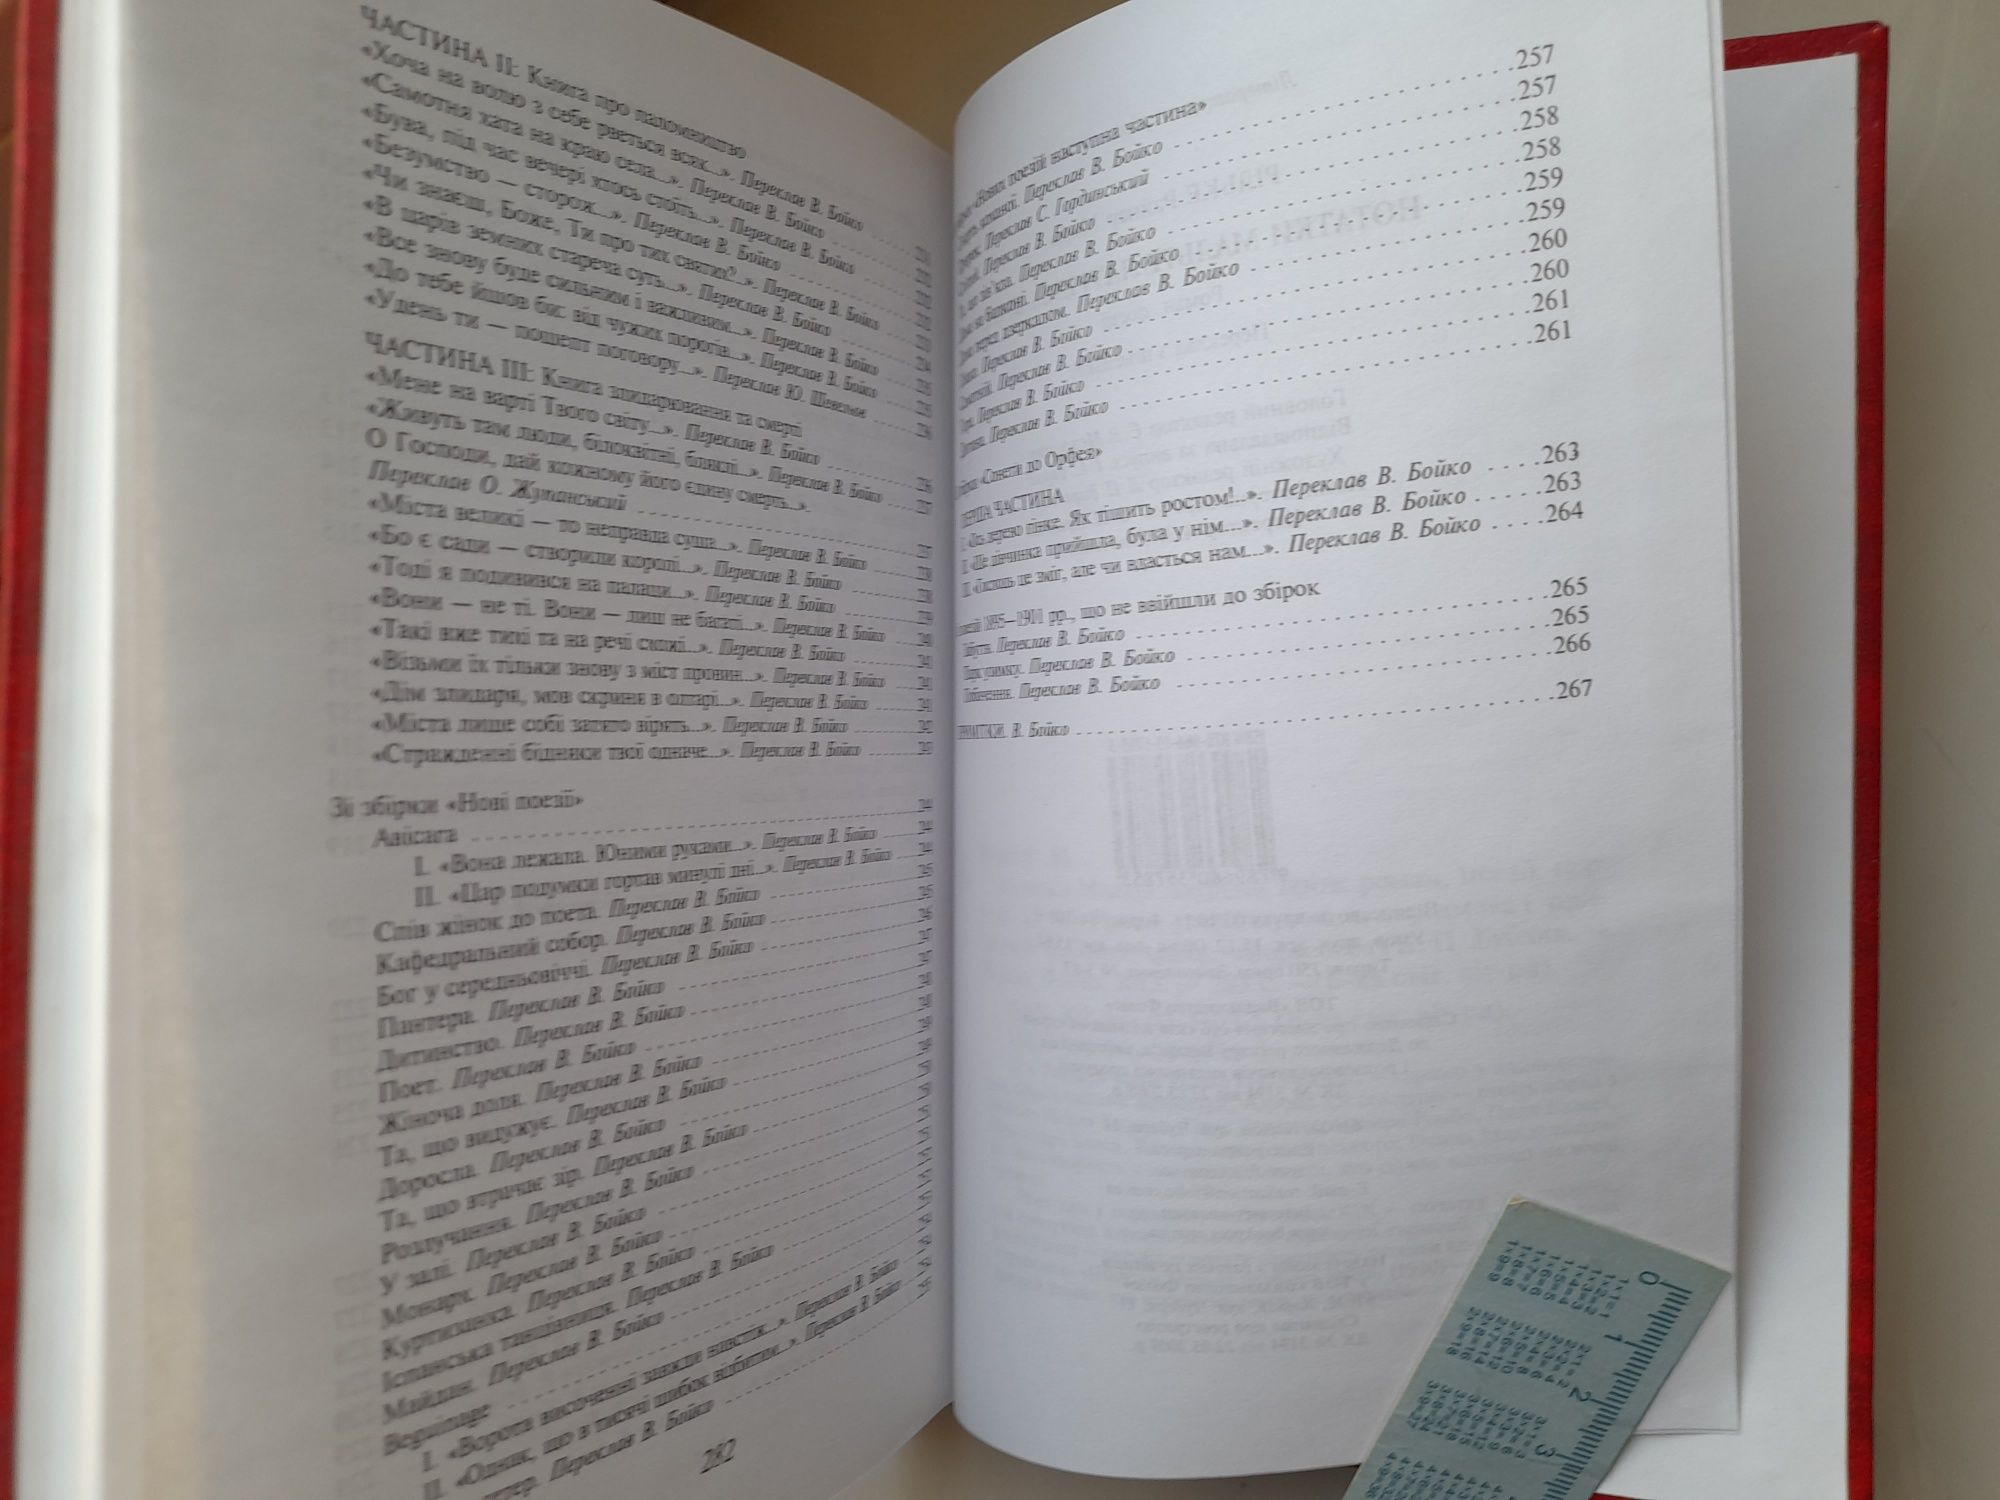 Рільке. Нотатки Мальте Лаурідса Бріге. Бібліотека світової літератури.